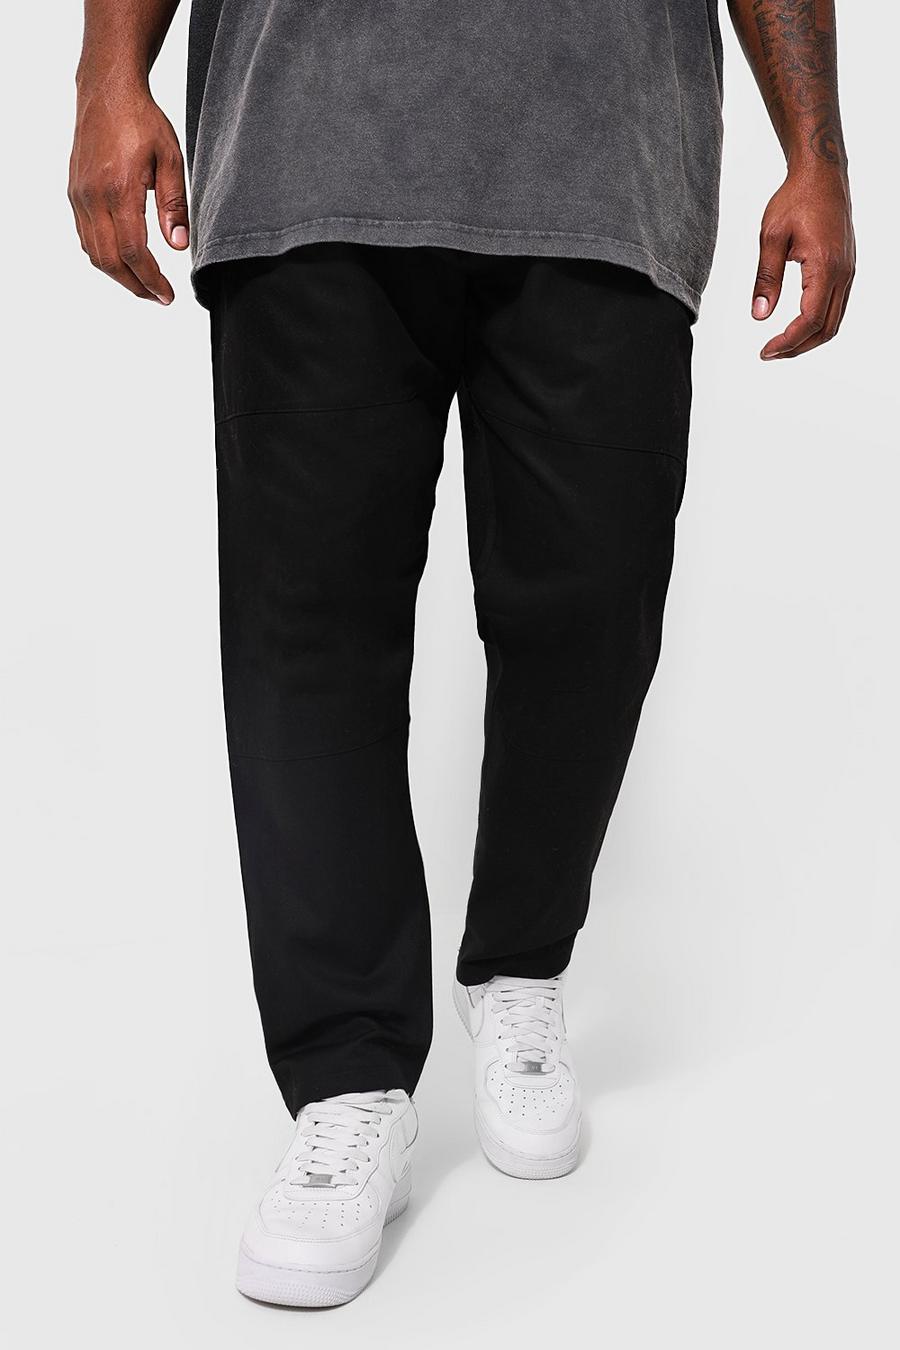 Pantaloni Plus Size in twill con gamba sottile e toppa sul ginocchio, Black nero